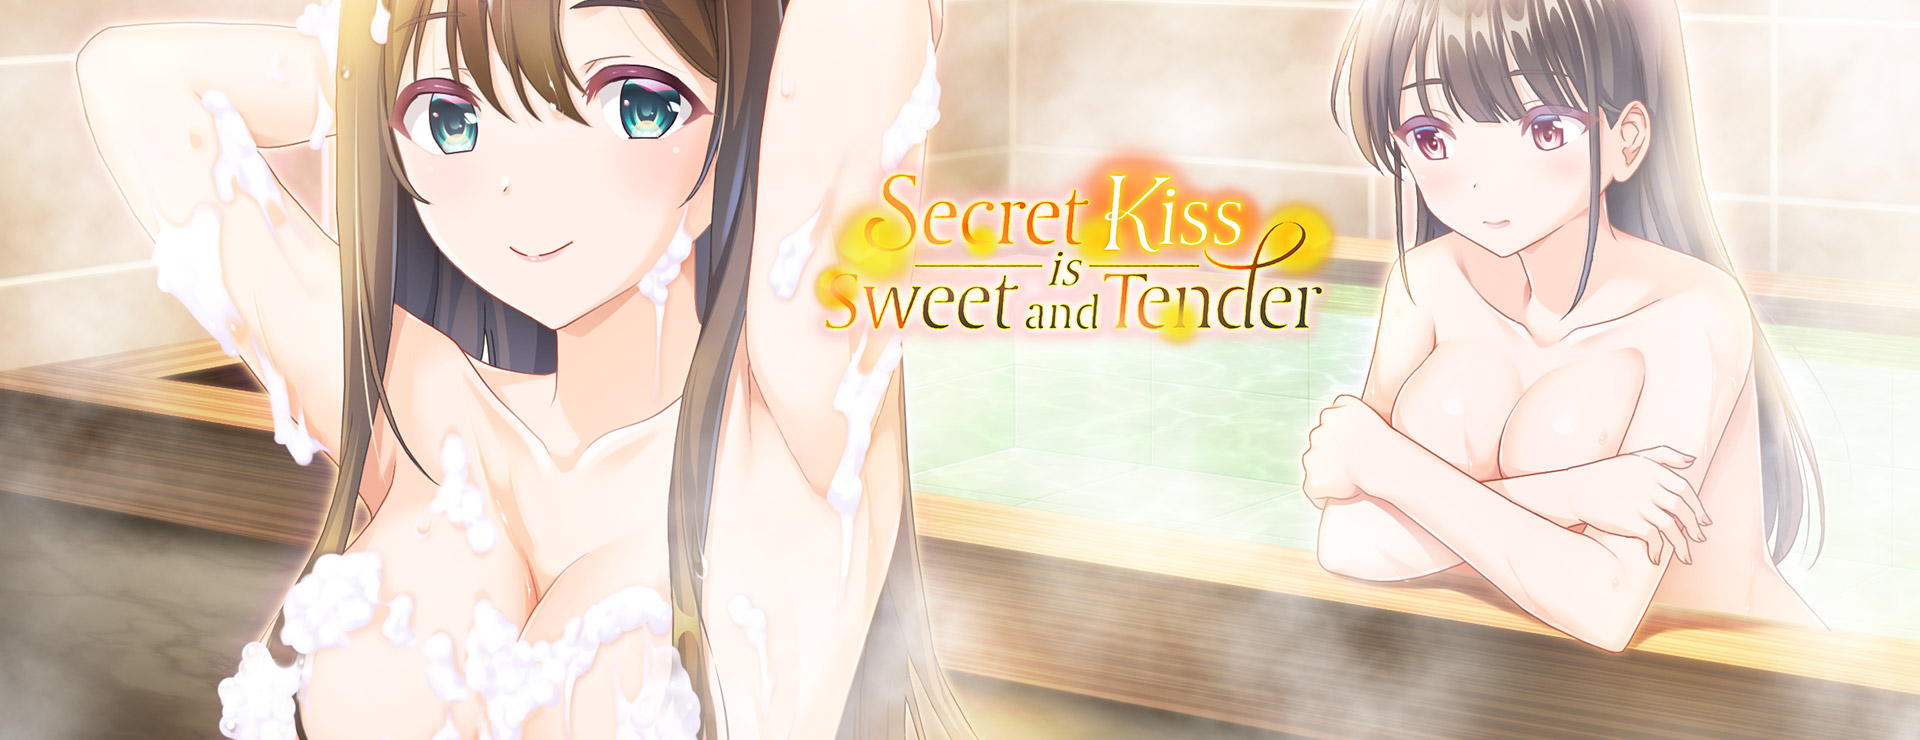 Secret Kiss is Sweet and Tender - Novela Visual Juego